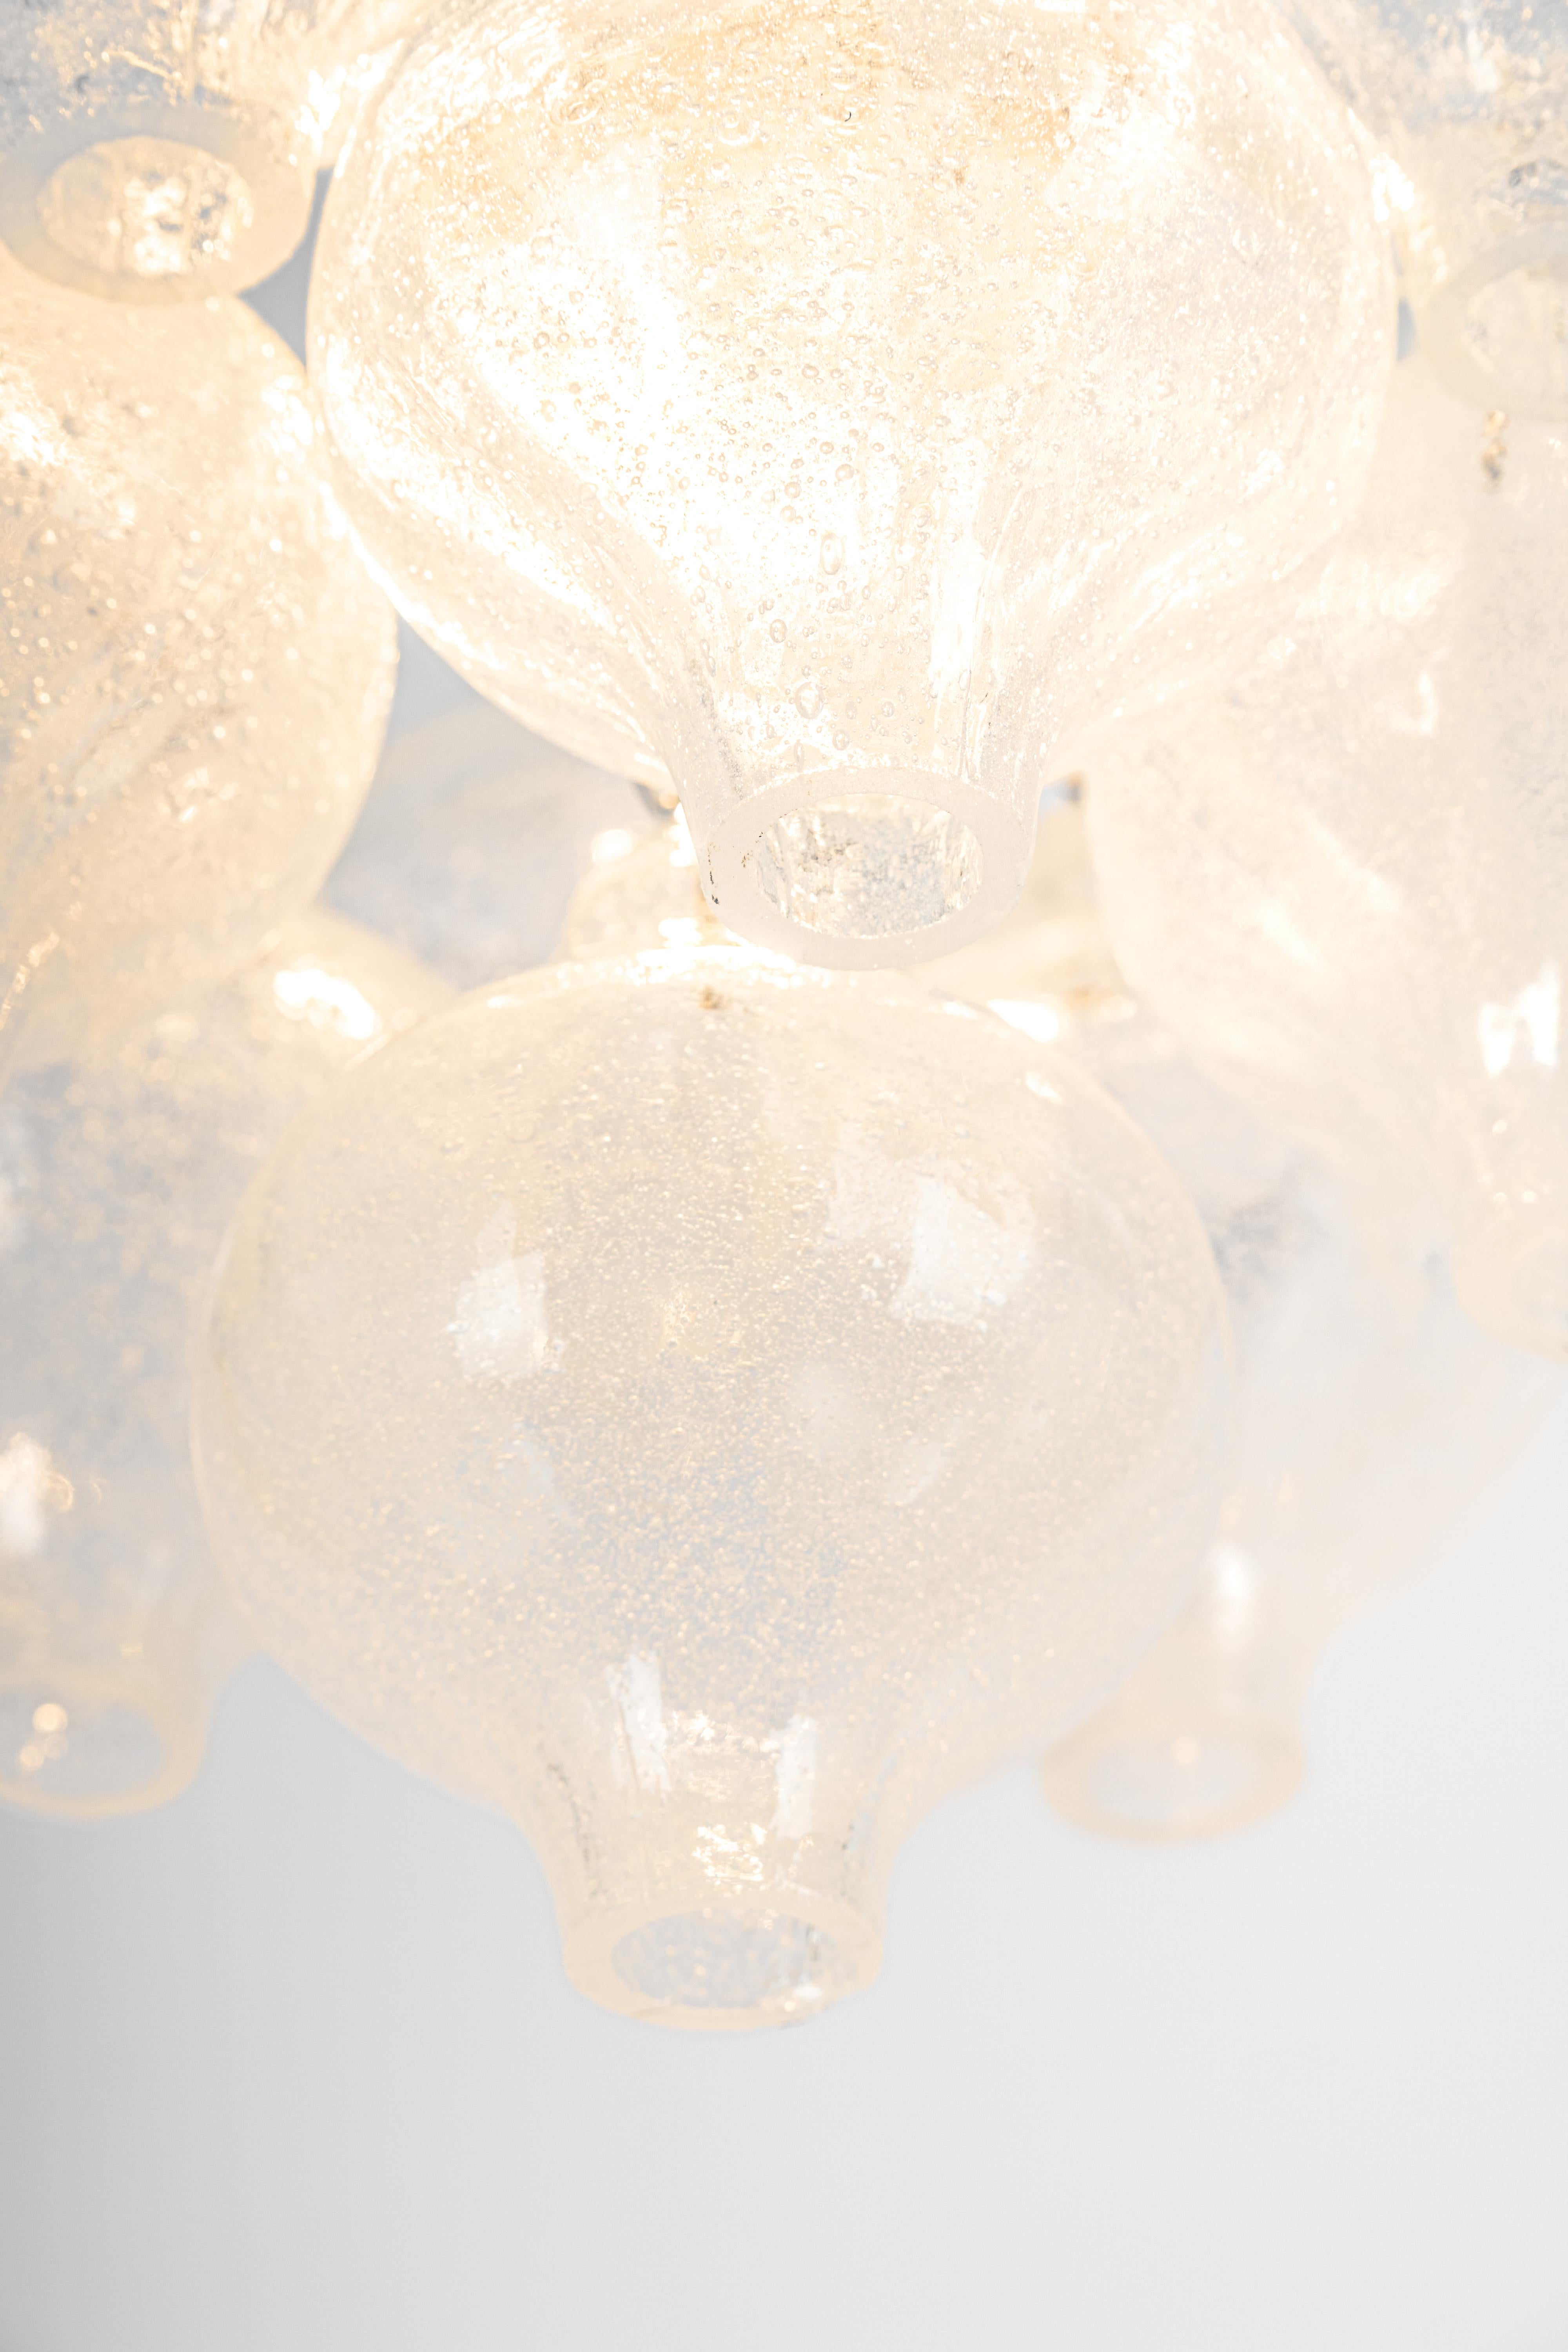 1 von 2 Petite wunderbare zwiebelförmige -Tulipan Glas flush mount. Die mundgeblasenen Gläser wurden an einem weiß lackierten Metallrahmen und einem Baldachin aus Messing aufgehängt.
Best of Design aus den 1960er Jahren von Kalmar, Österreich. Hohe